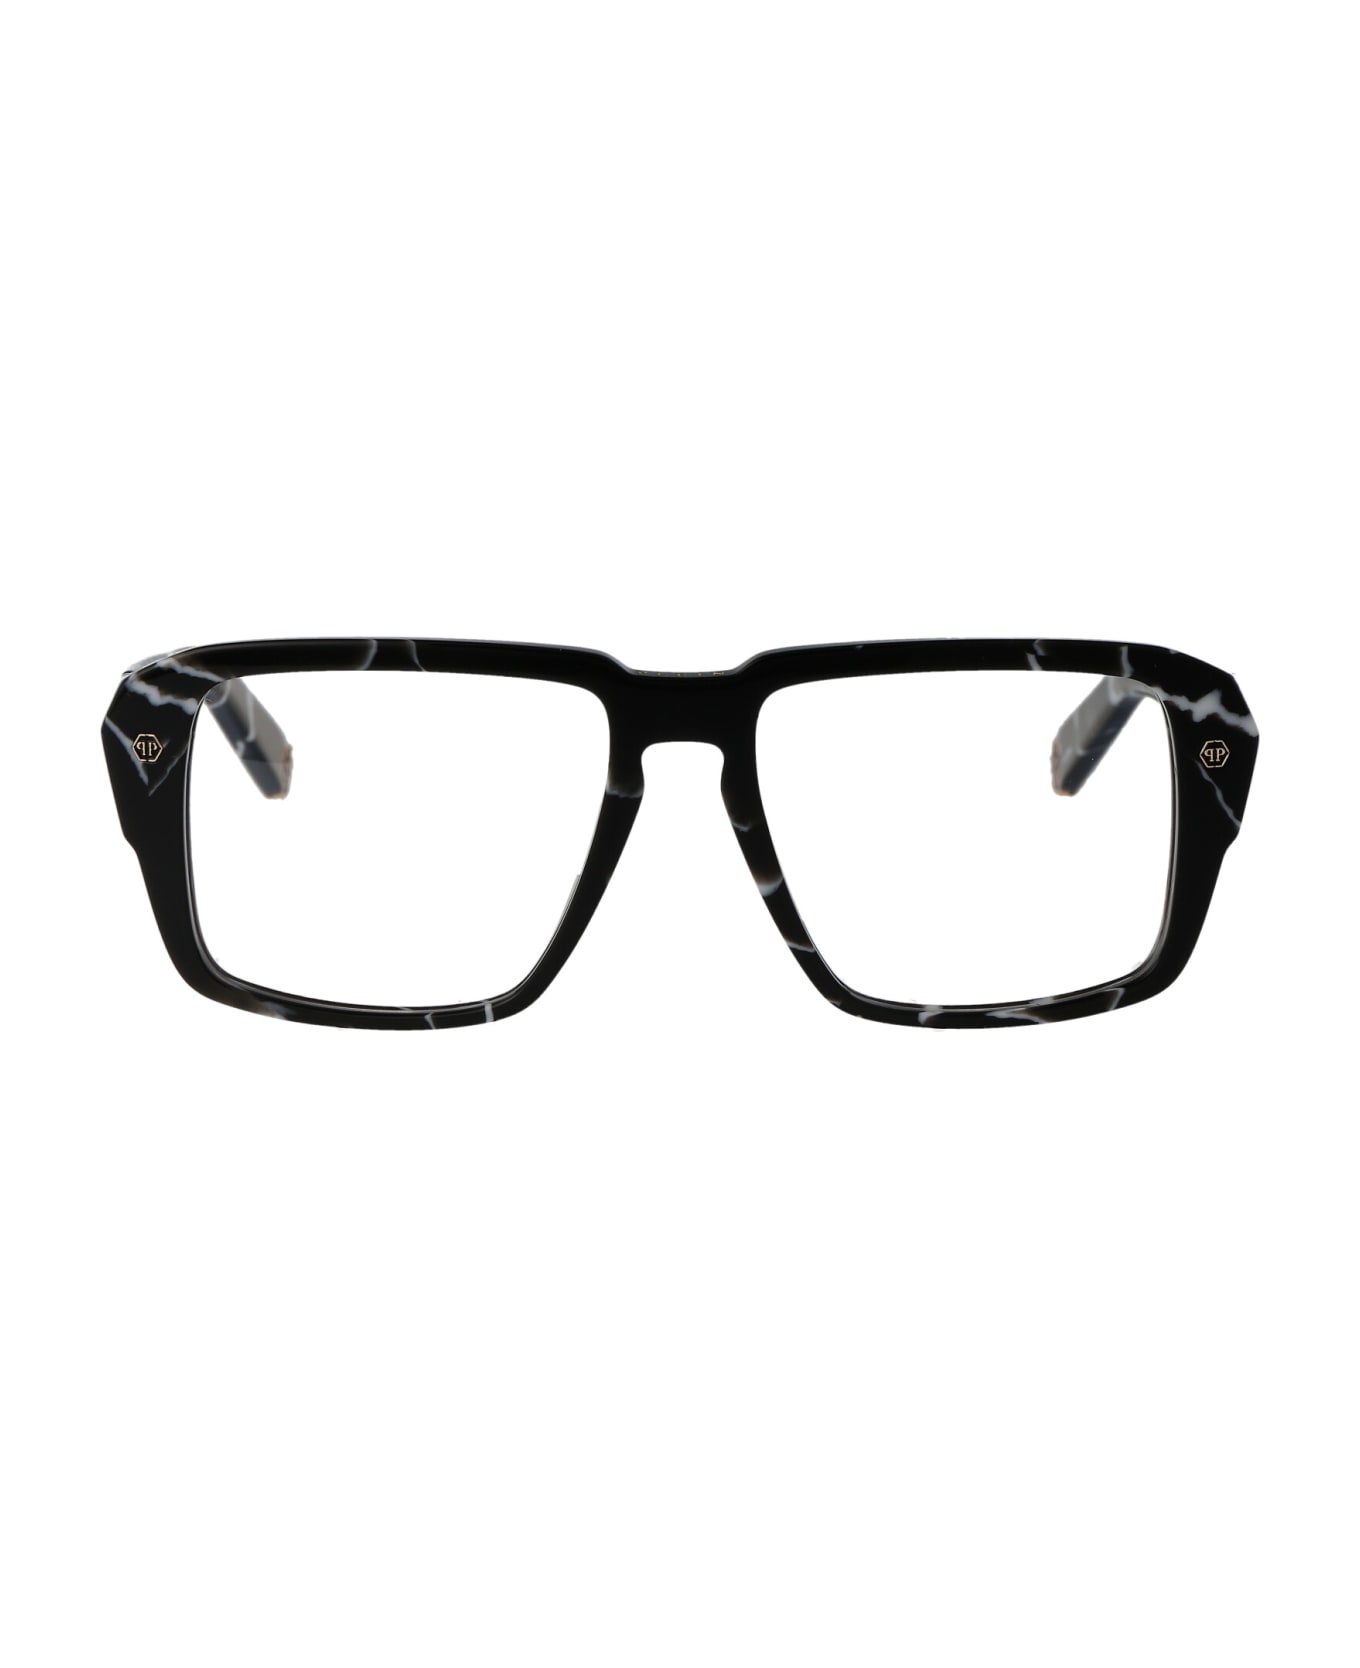 Philipp Plein Vpp081 Glasses - 0Z21 NERO MARMORIZZATO